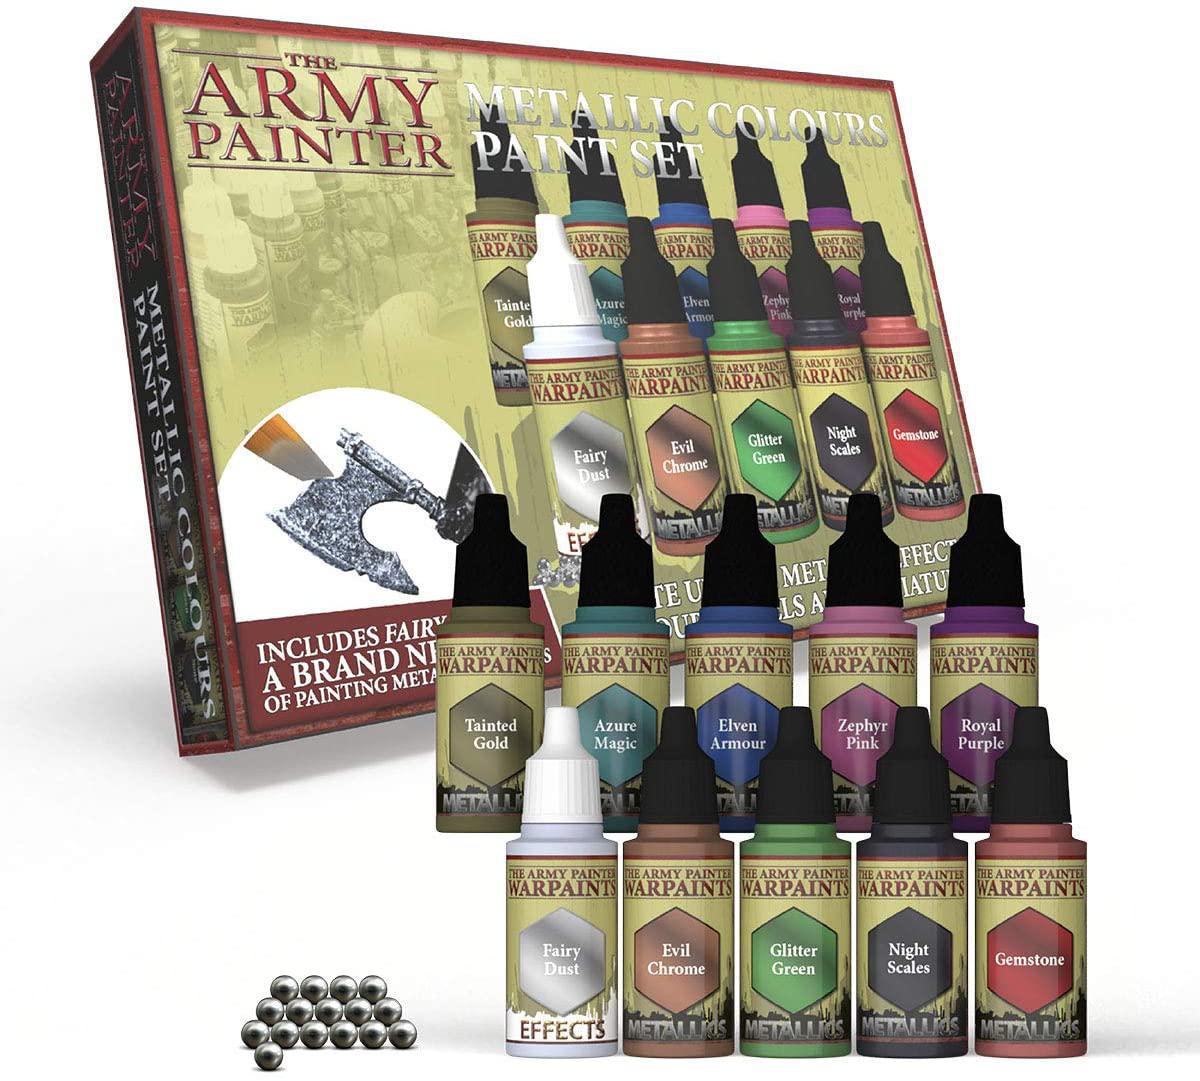 Army Painter - Speedpaint 2.0 Mega Paint Set – Level One Game Shop